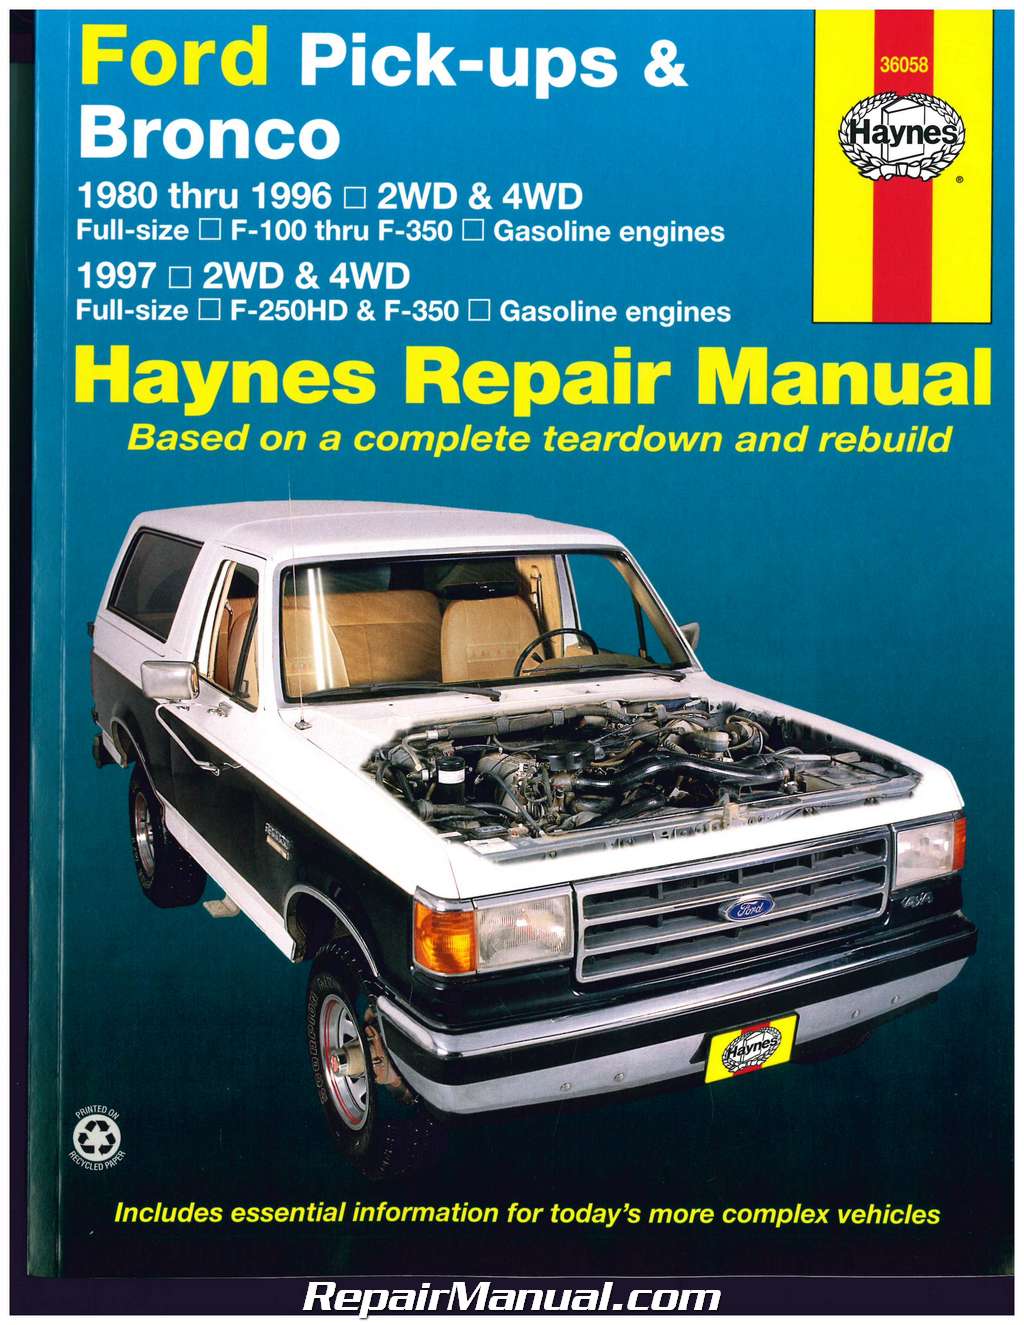 1997 Ford e150 haynes repair manual #10